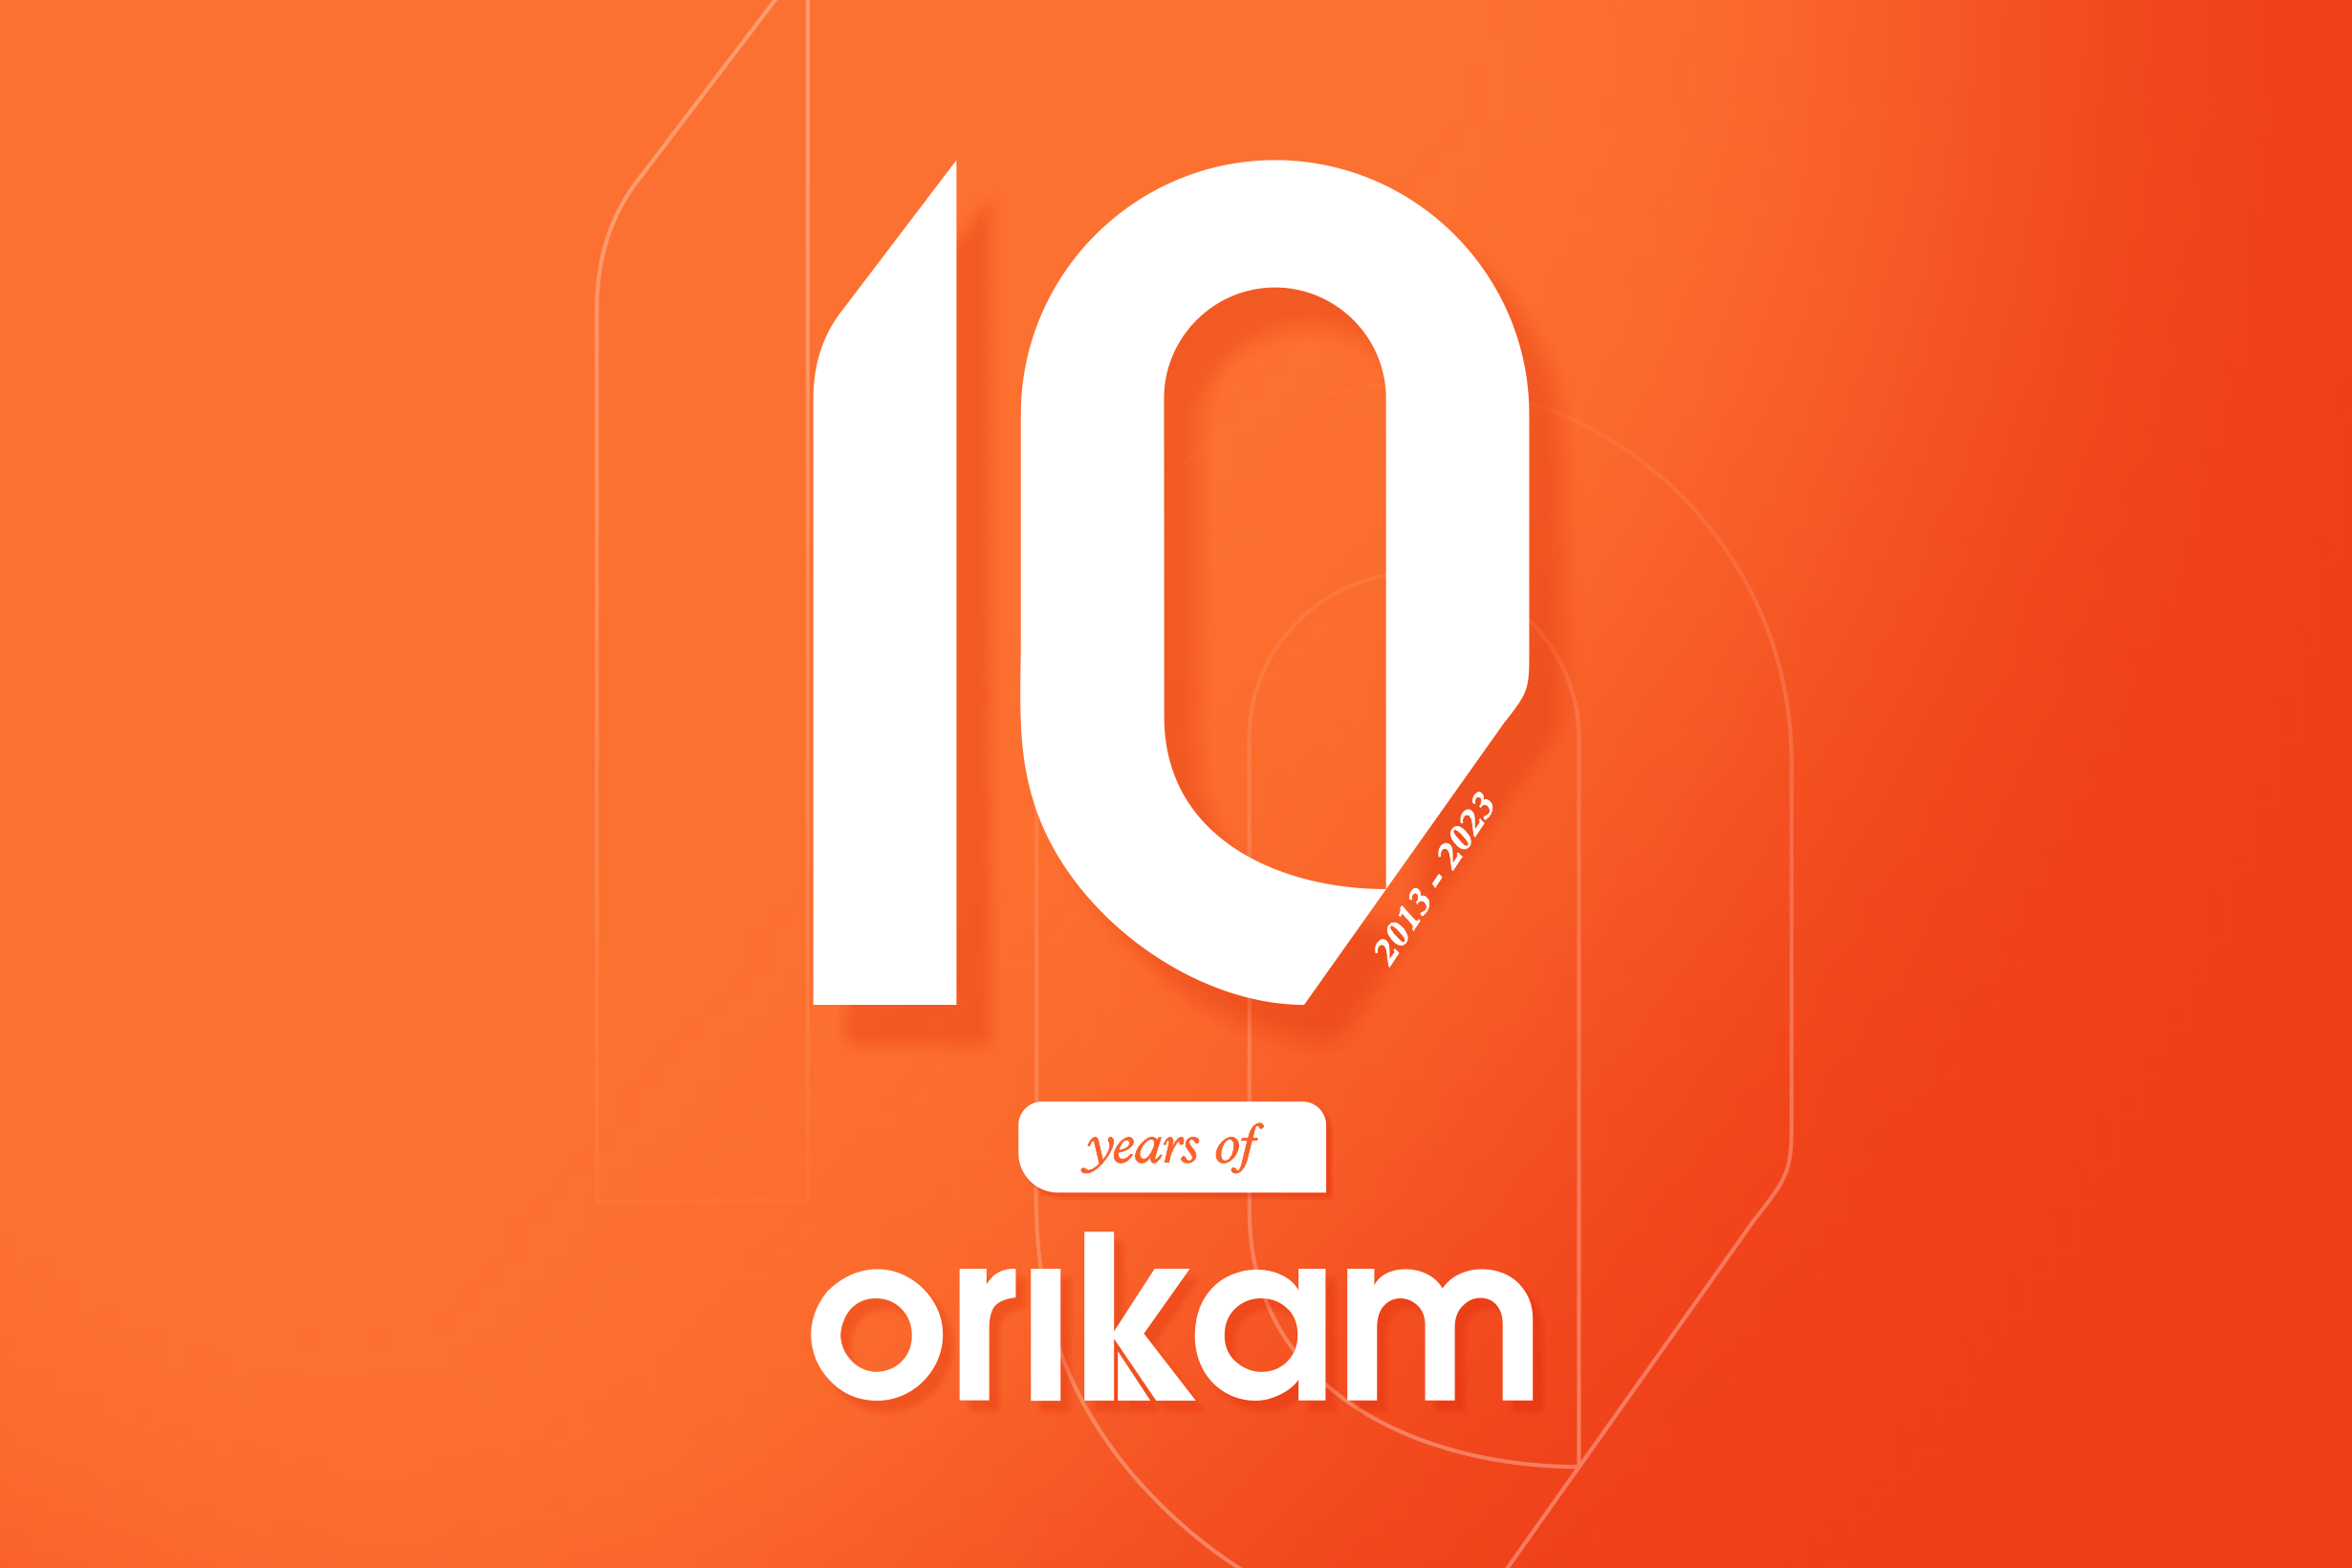 10 Years of Orikam